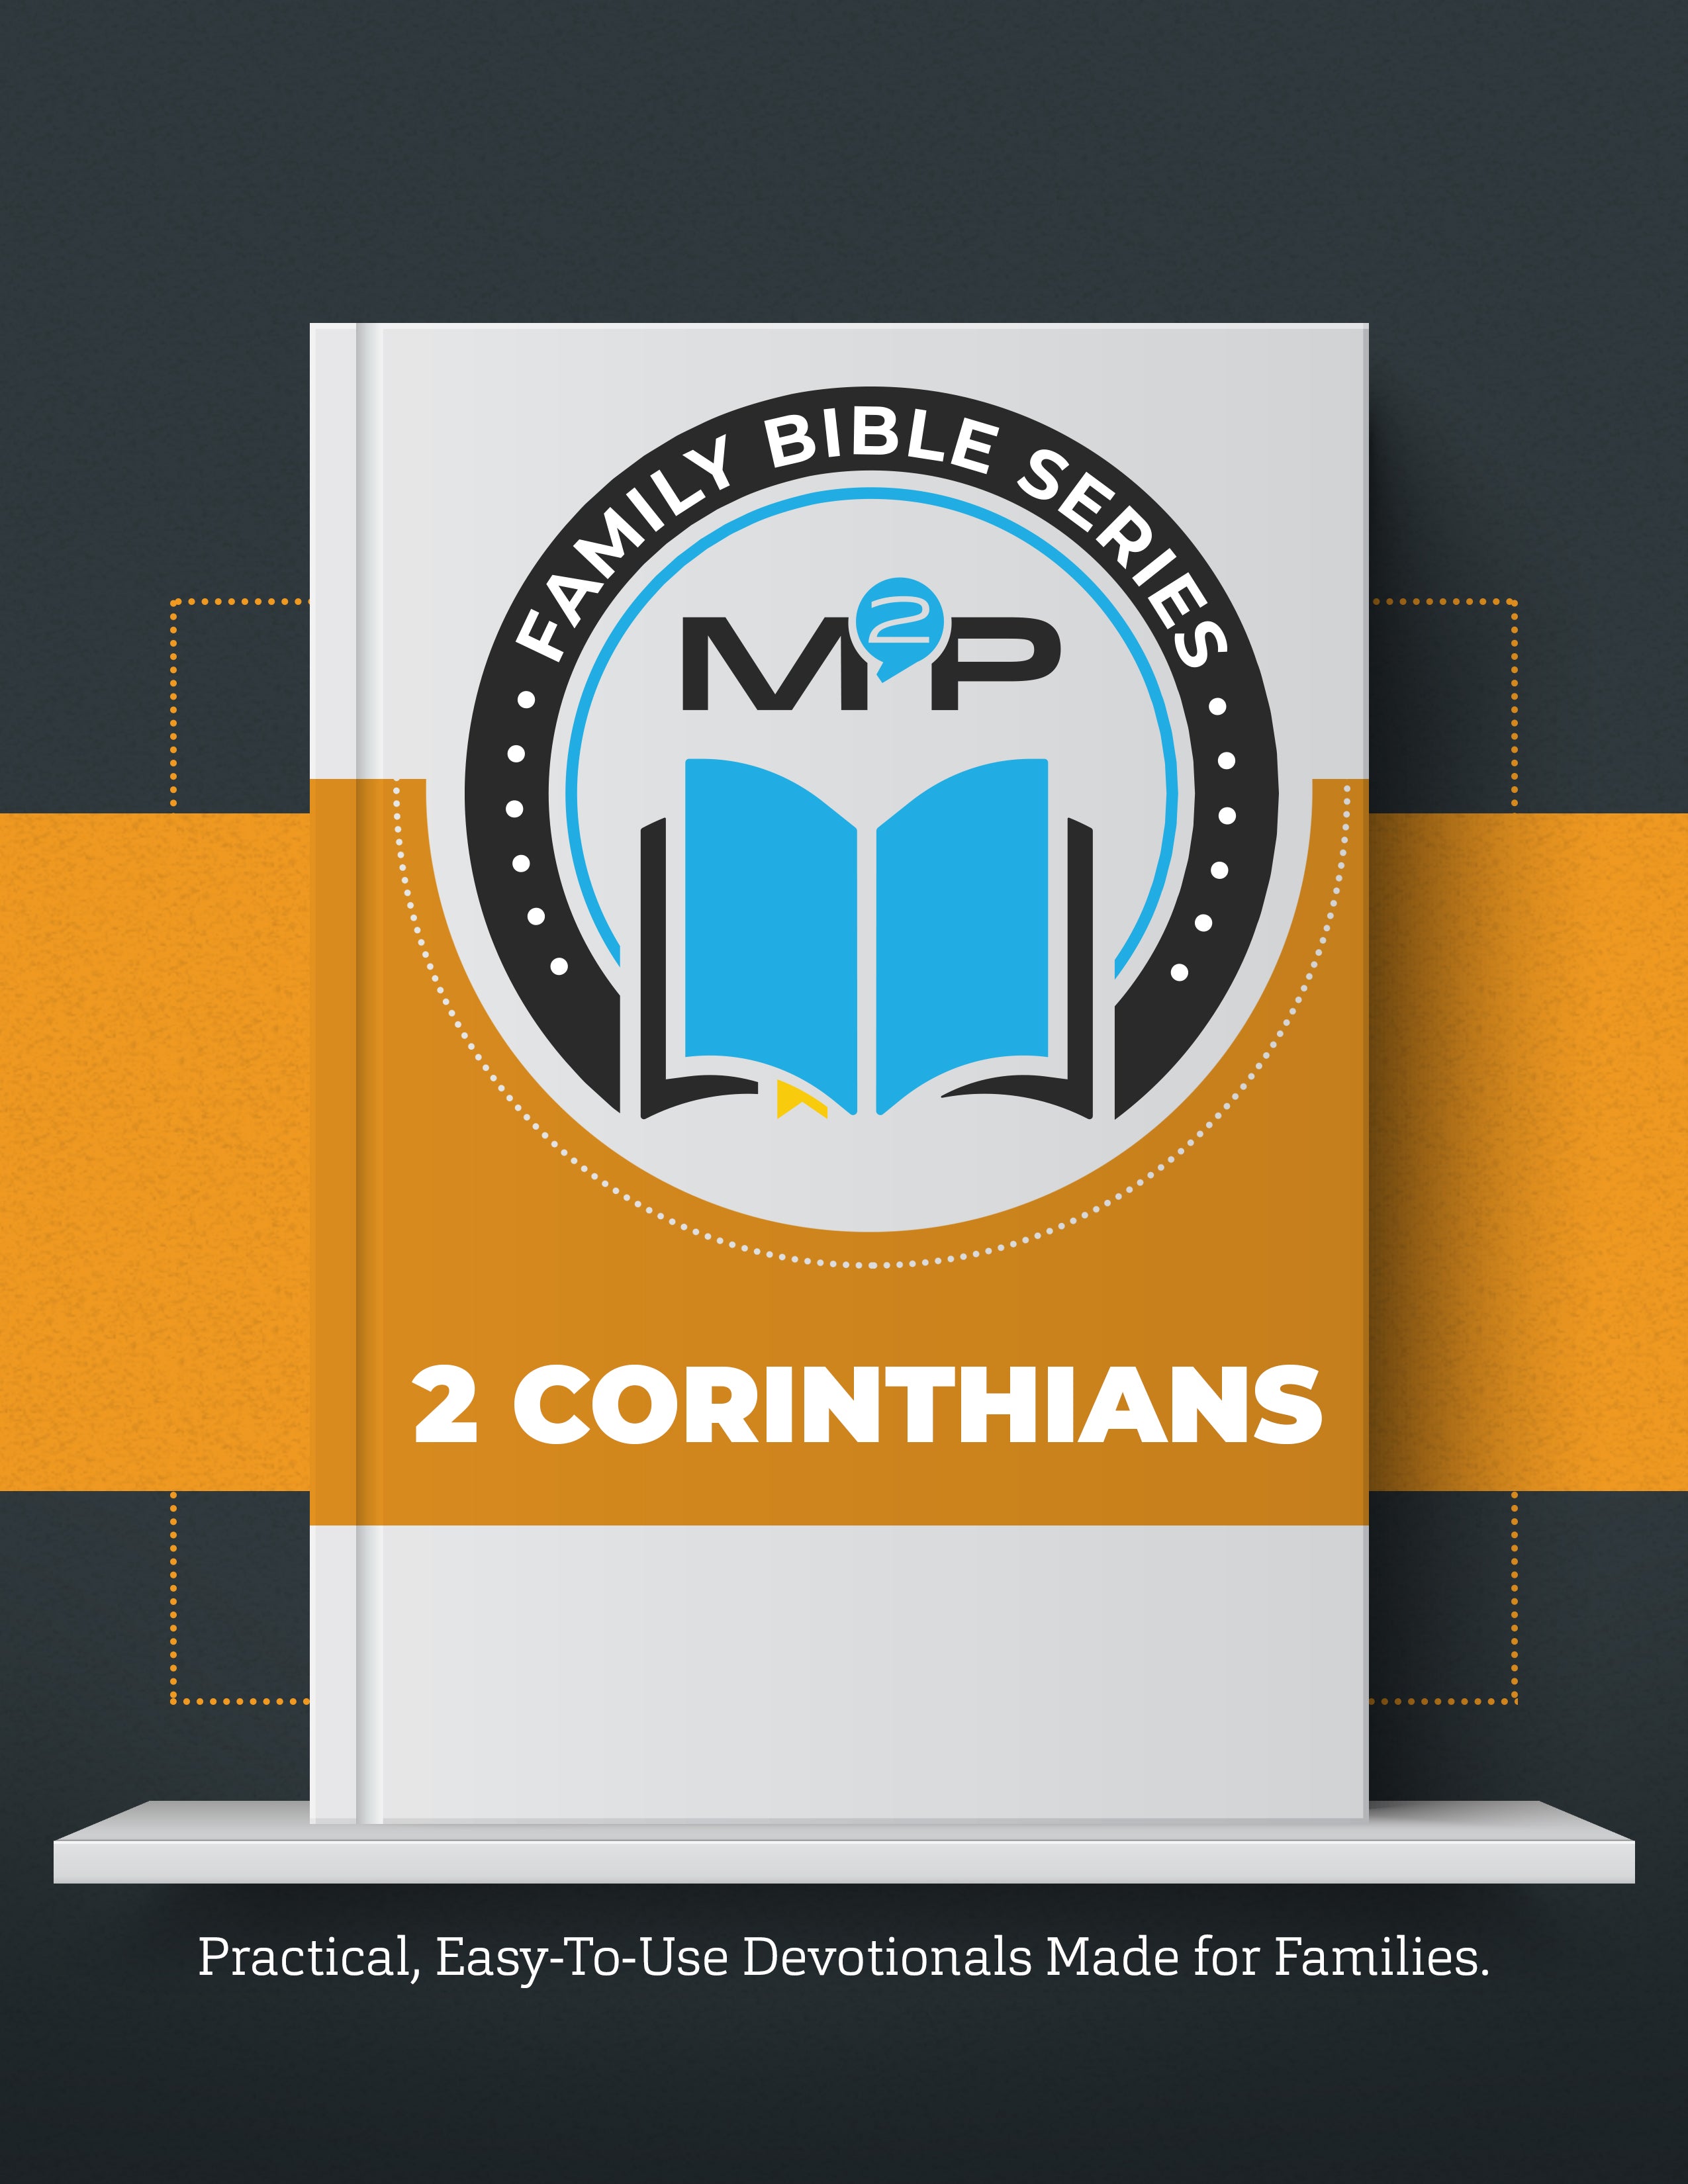 2 Corinthians: Family Bible Study